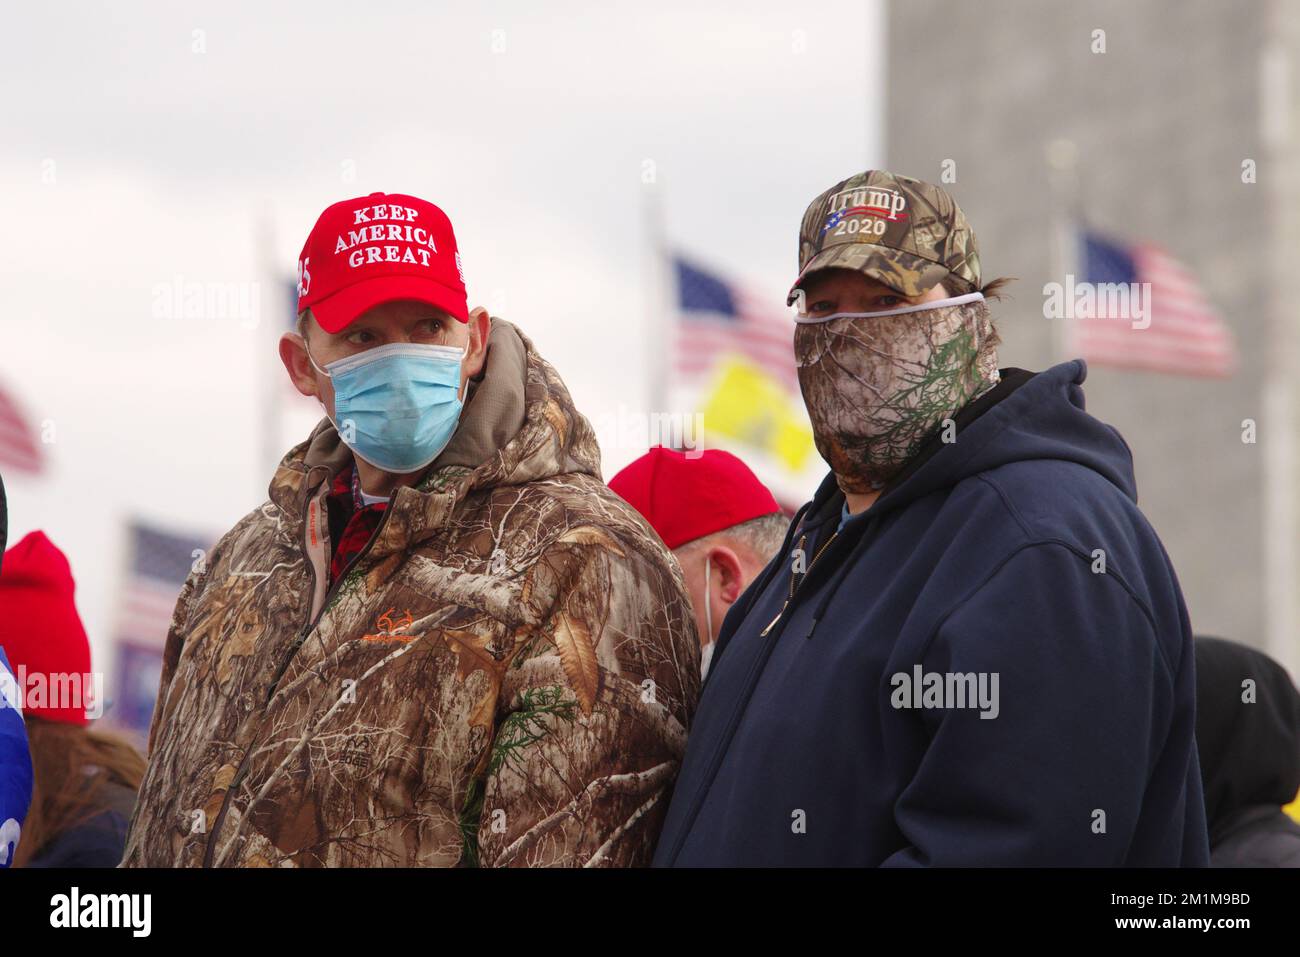 Une paire de participants de rallye masqués « Stop the Sal » regarde à l'époque des États-Unis Discours du président Donald Trump sur 6 janvier 2021. Banque D'Images